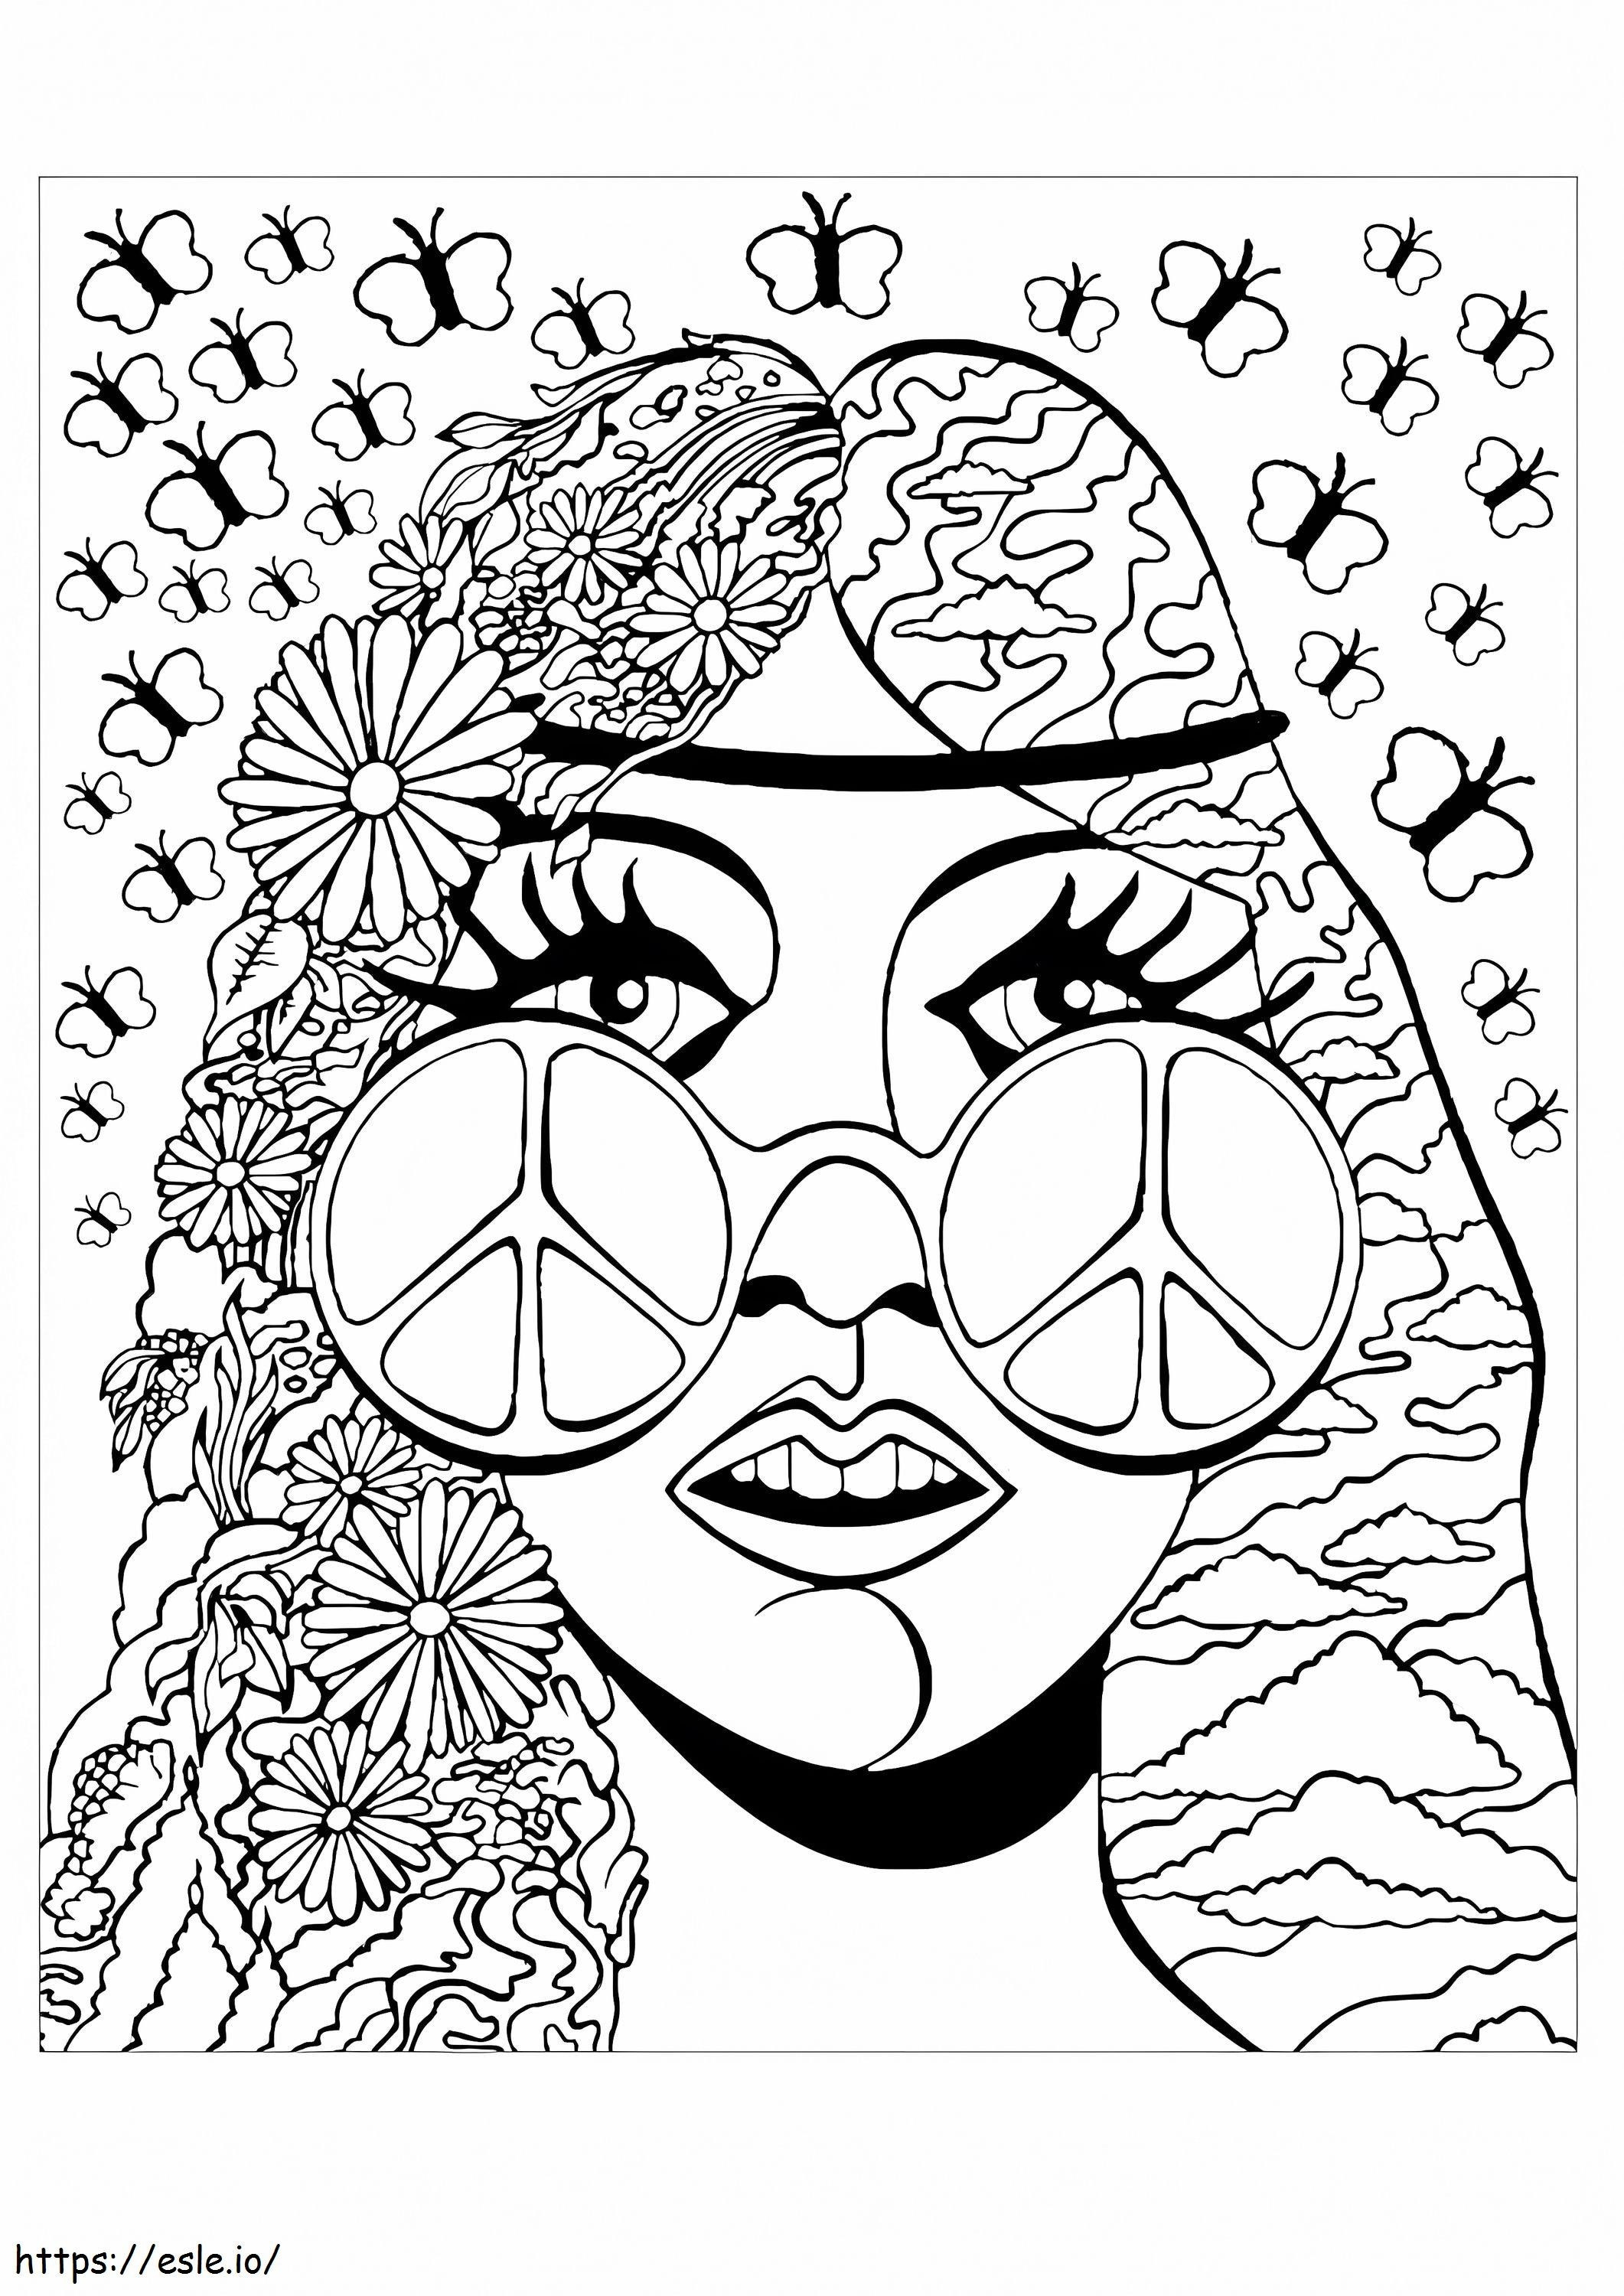 Coloriage Fille hippie cool 1 à imprimer dessin